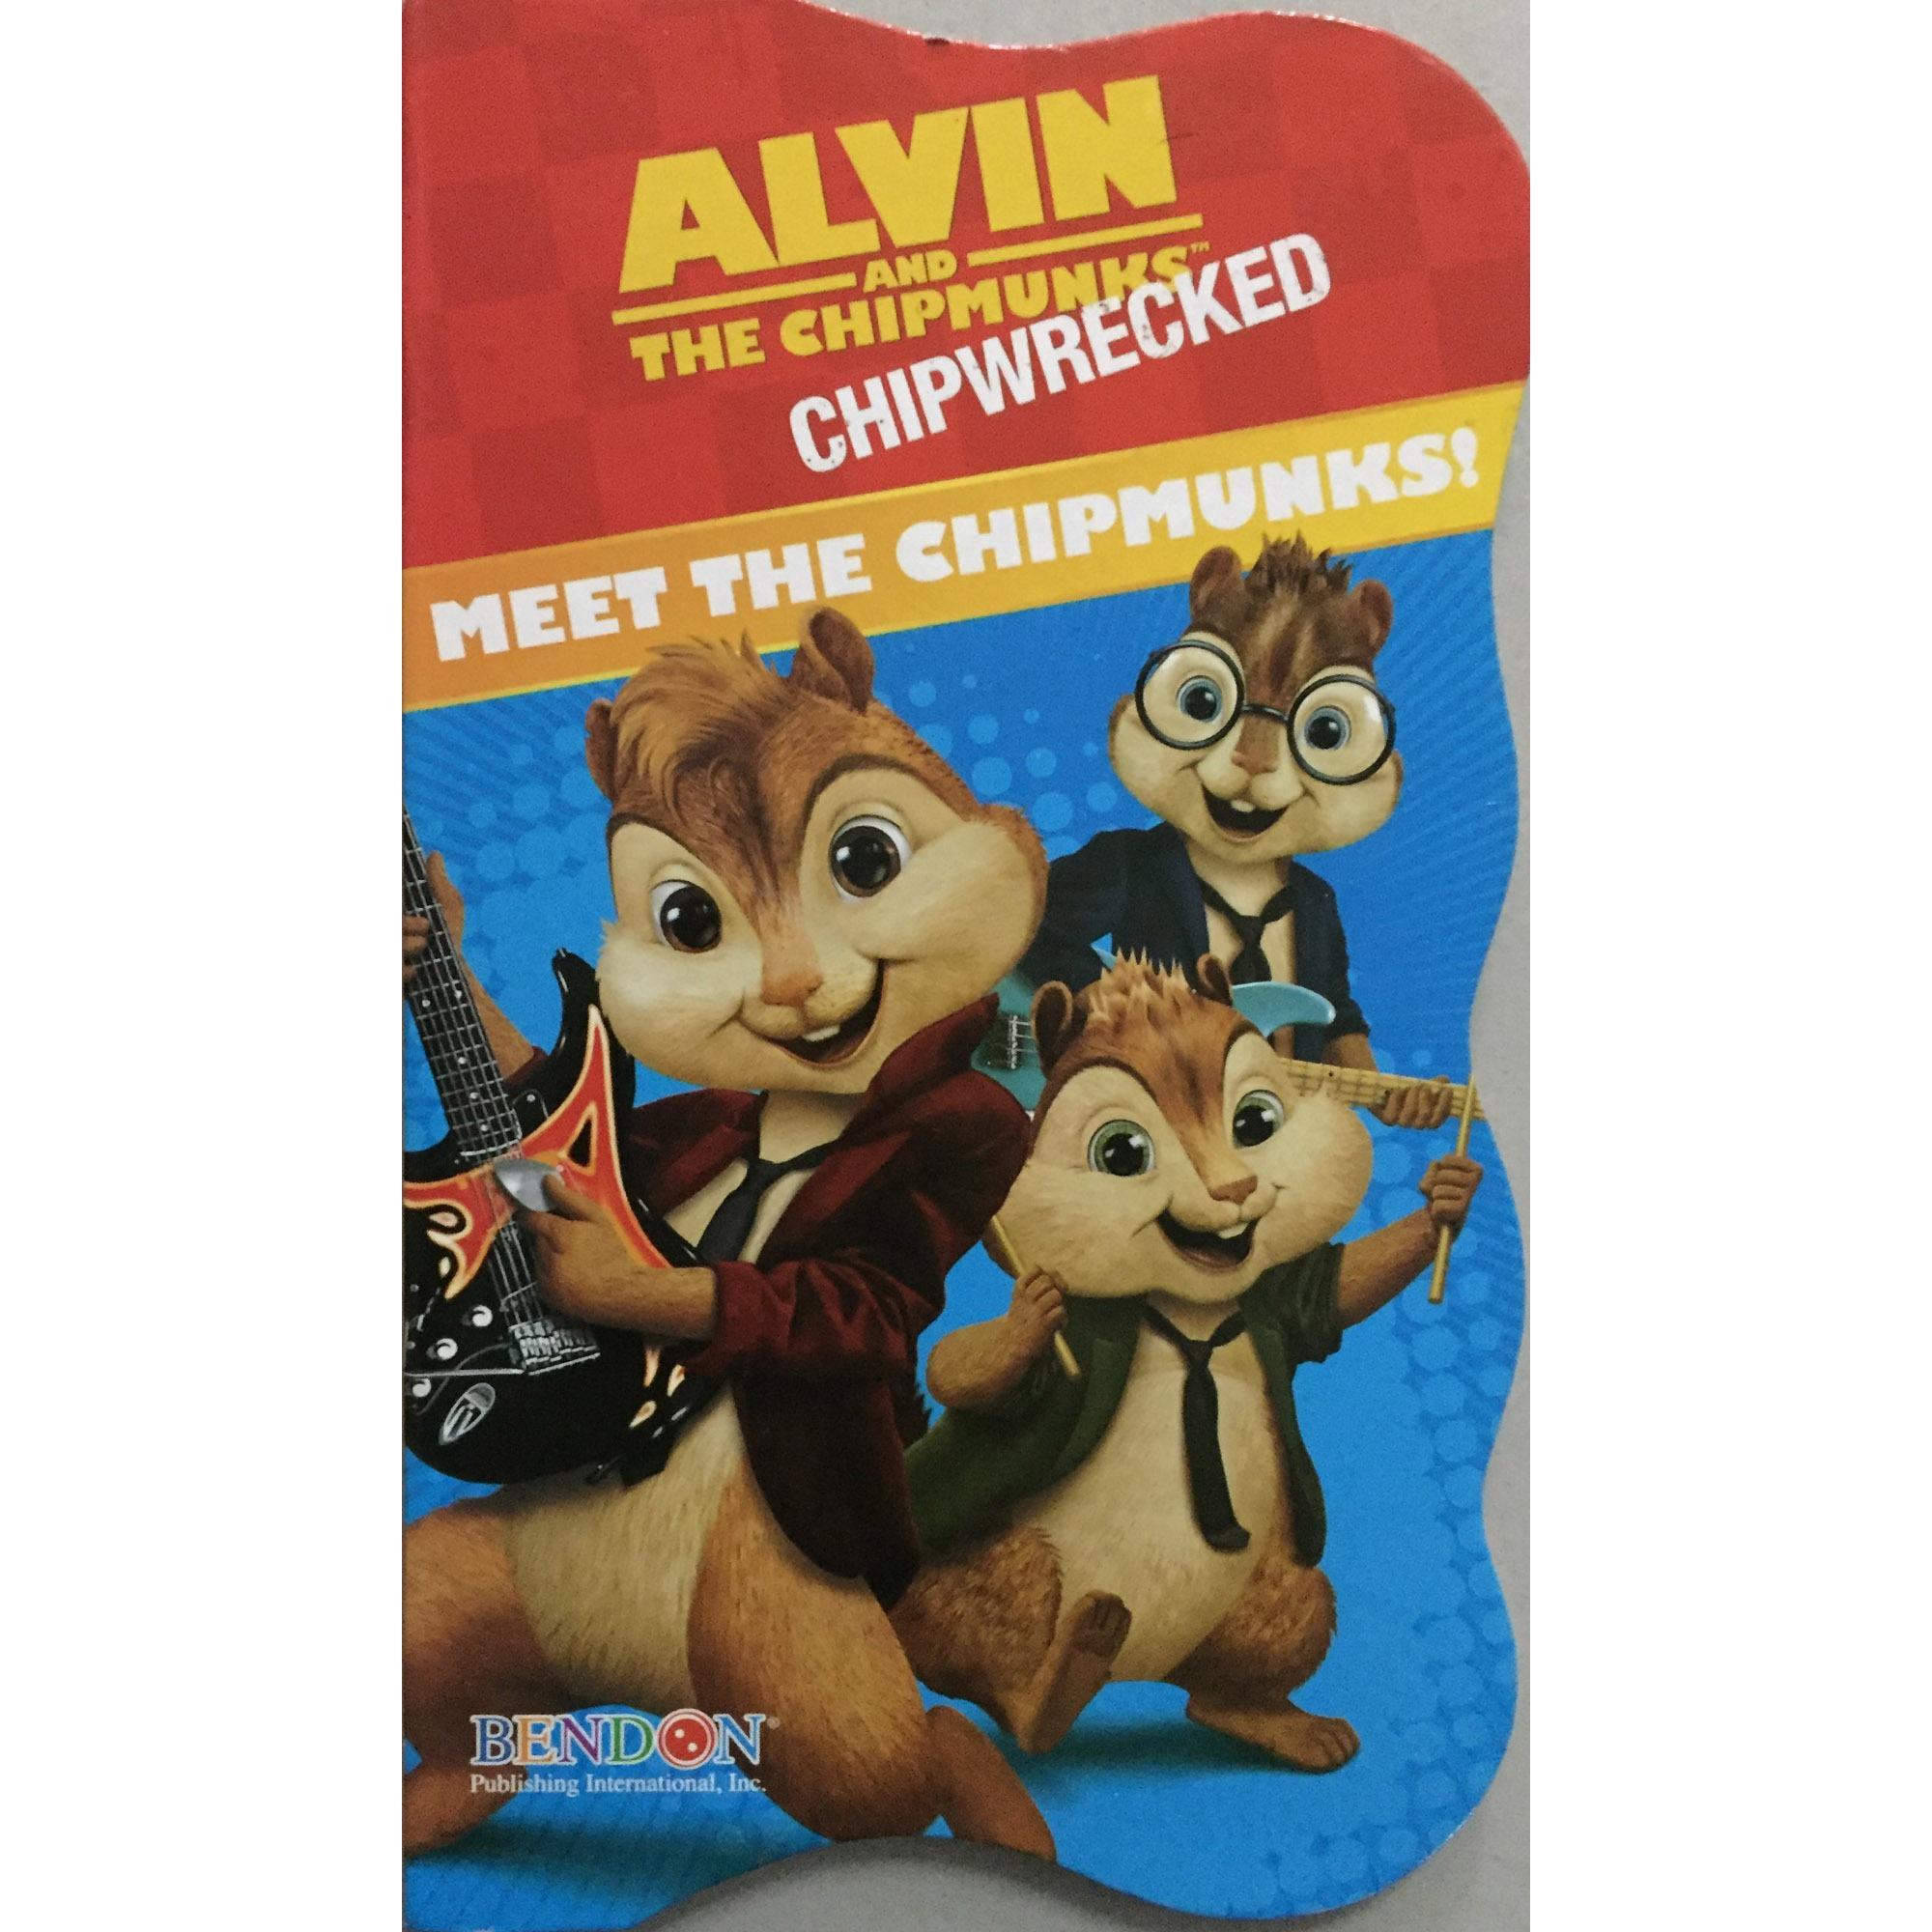 Alvin and the Chipmunks(หนังสือ นำเข้าภาษาอังกฤษ นำเข้าจาก อเมริกา ฝึกทักษะภาษา ฝึกสมองสำหรับเด็ก) 